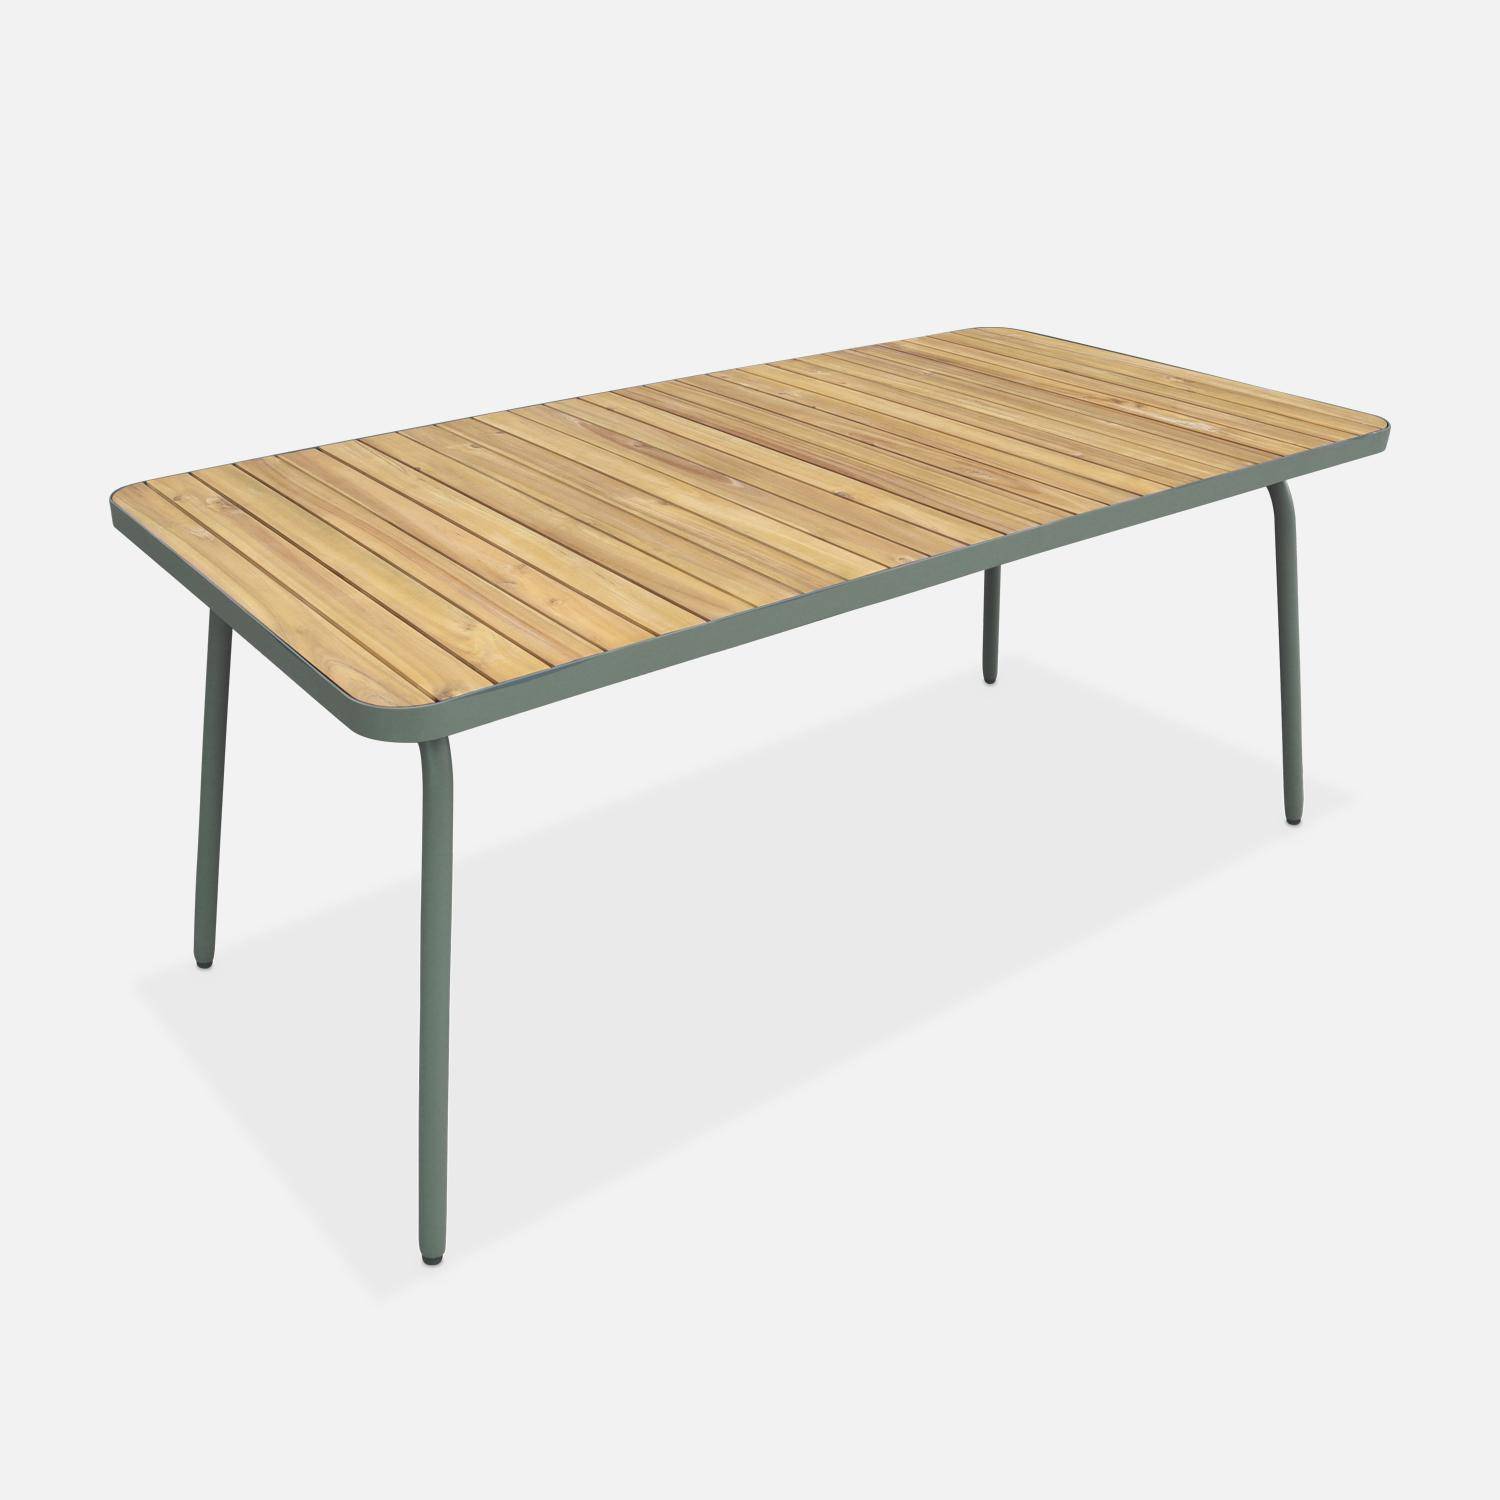 Gartentisch aus FSC-Akazienholz, salbeigrüner Stahl, klappbare Beine, 6 Plätze - Sanur,sweeek,Photo1